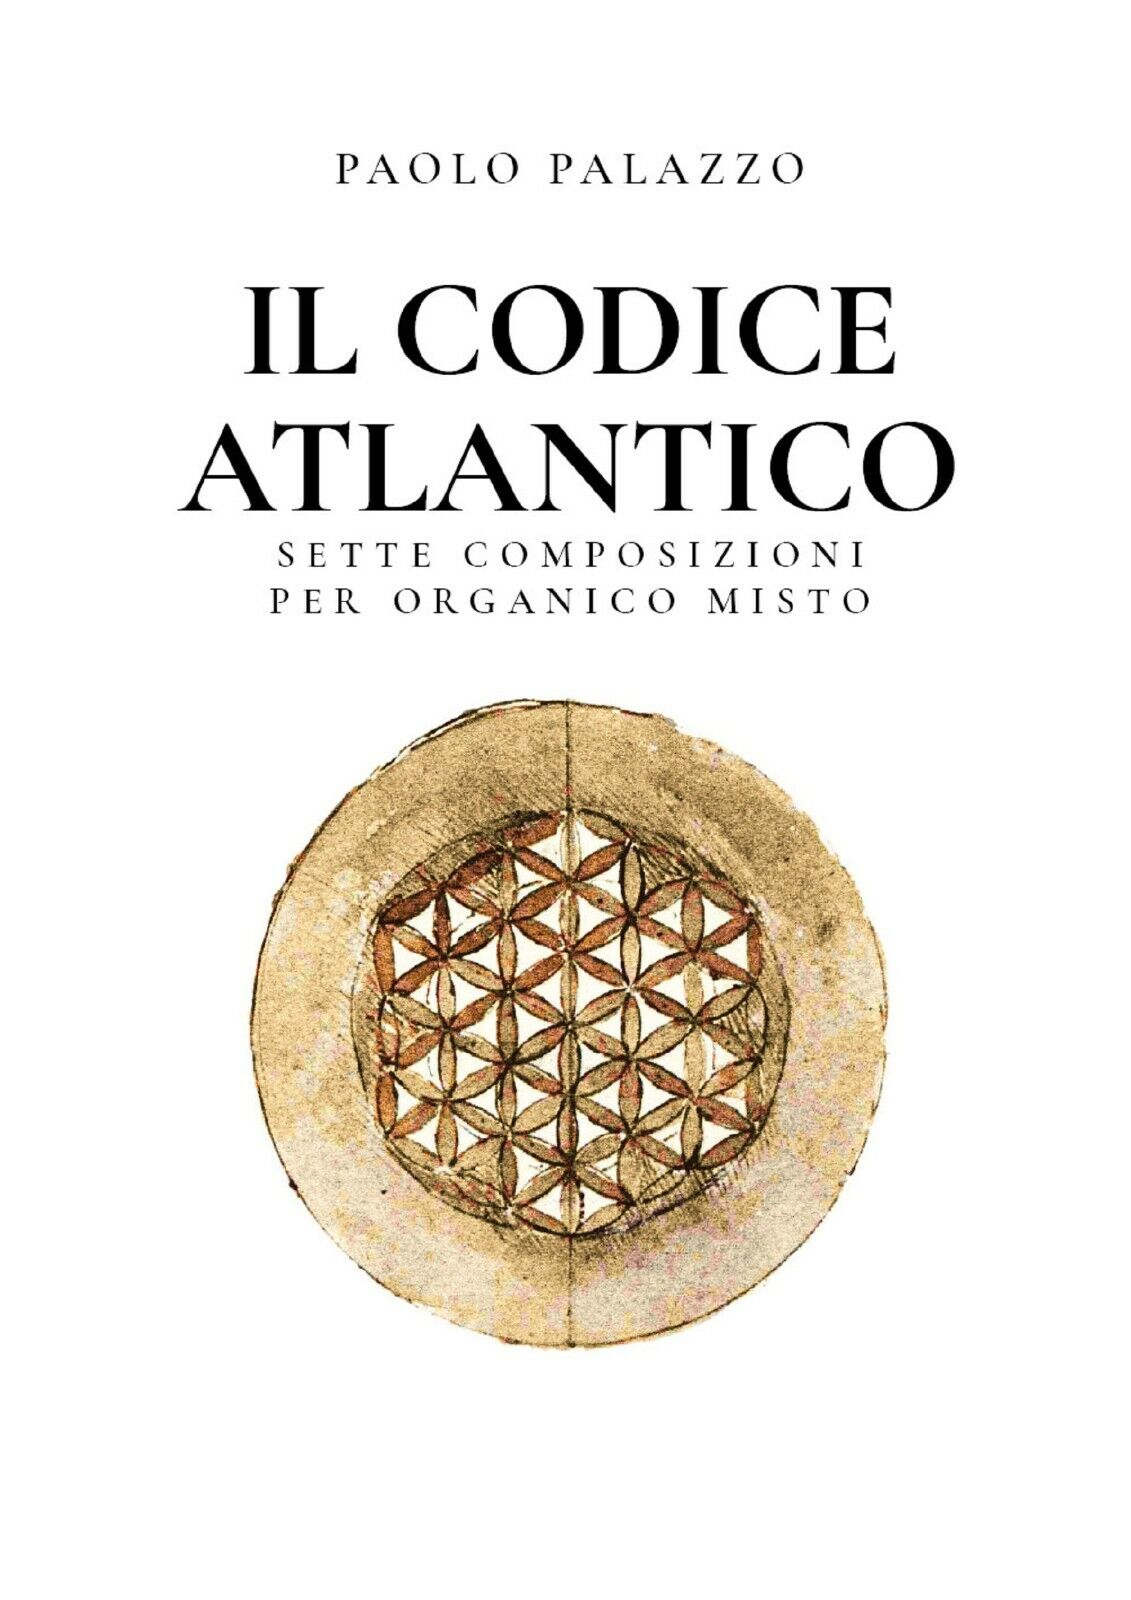 Il Codice Atlantico - Sette composizioni per organico misto di Paolo Palazzo,  2 libro usato